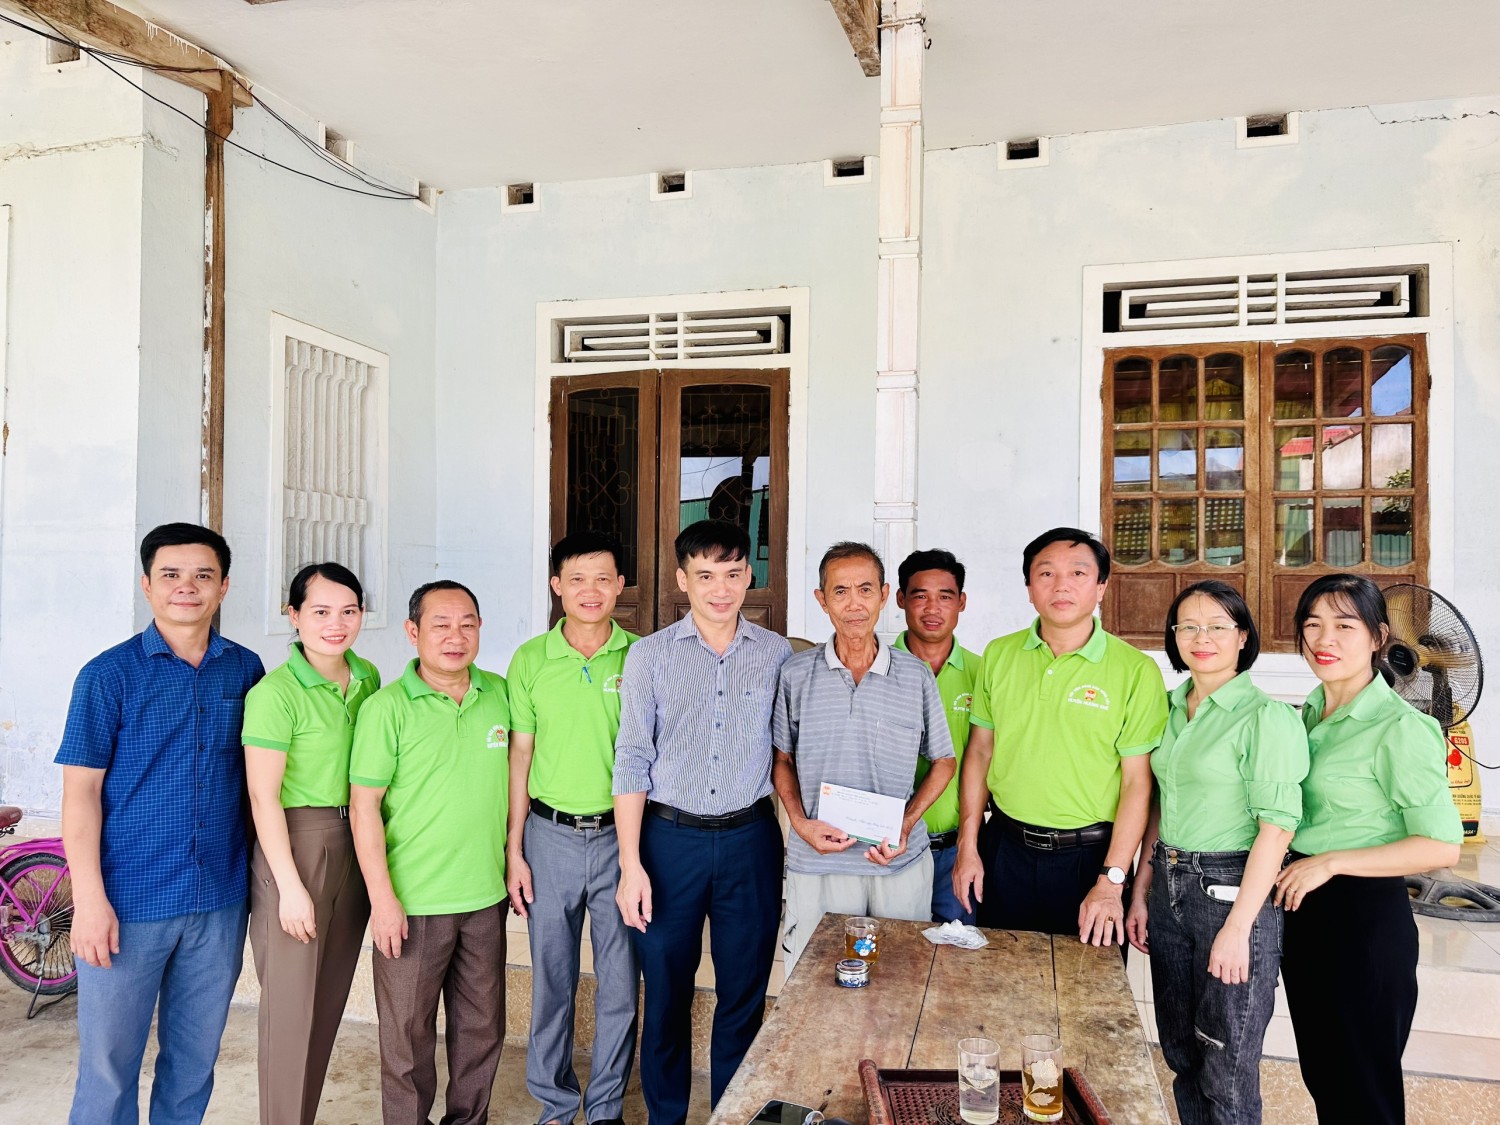 Đoàn đã đến thăm và tặng quà cho Thương binh Nguyễn Ttung Hòa có hoàn cảnh khó khăn tại thôn 1 xã Hòa Hải huyện Hương Khê